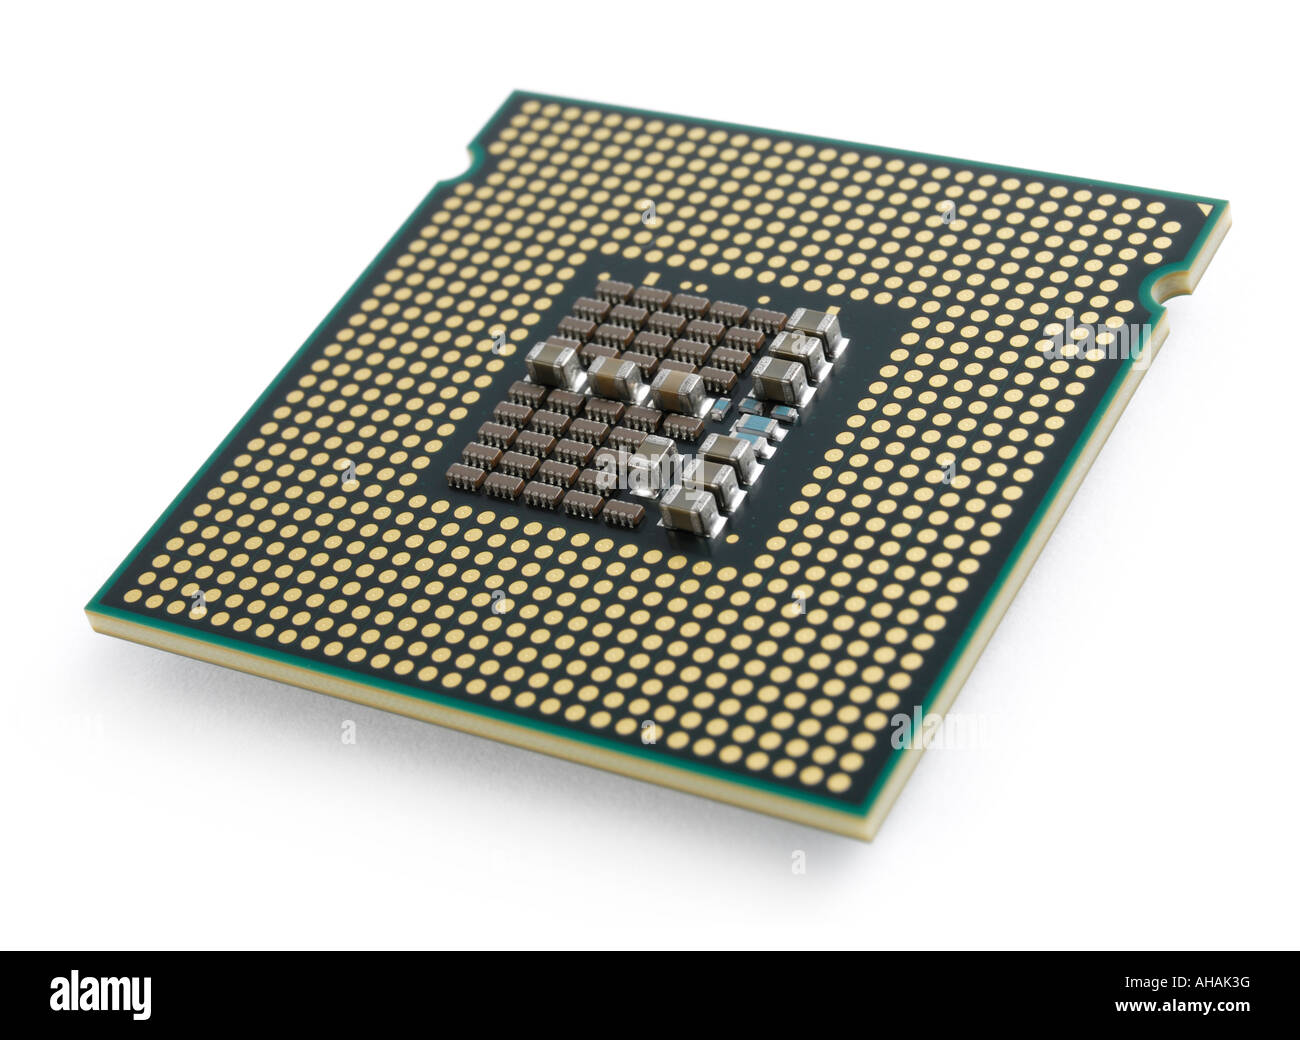 Intel Core 2 Quad Q6600 CPU Stock Photo - Alamy